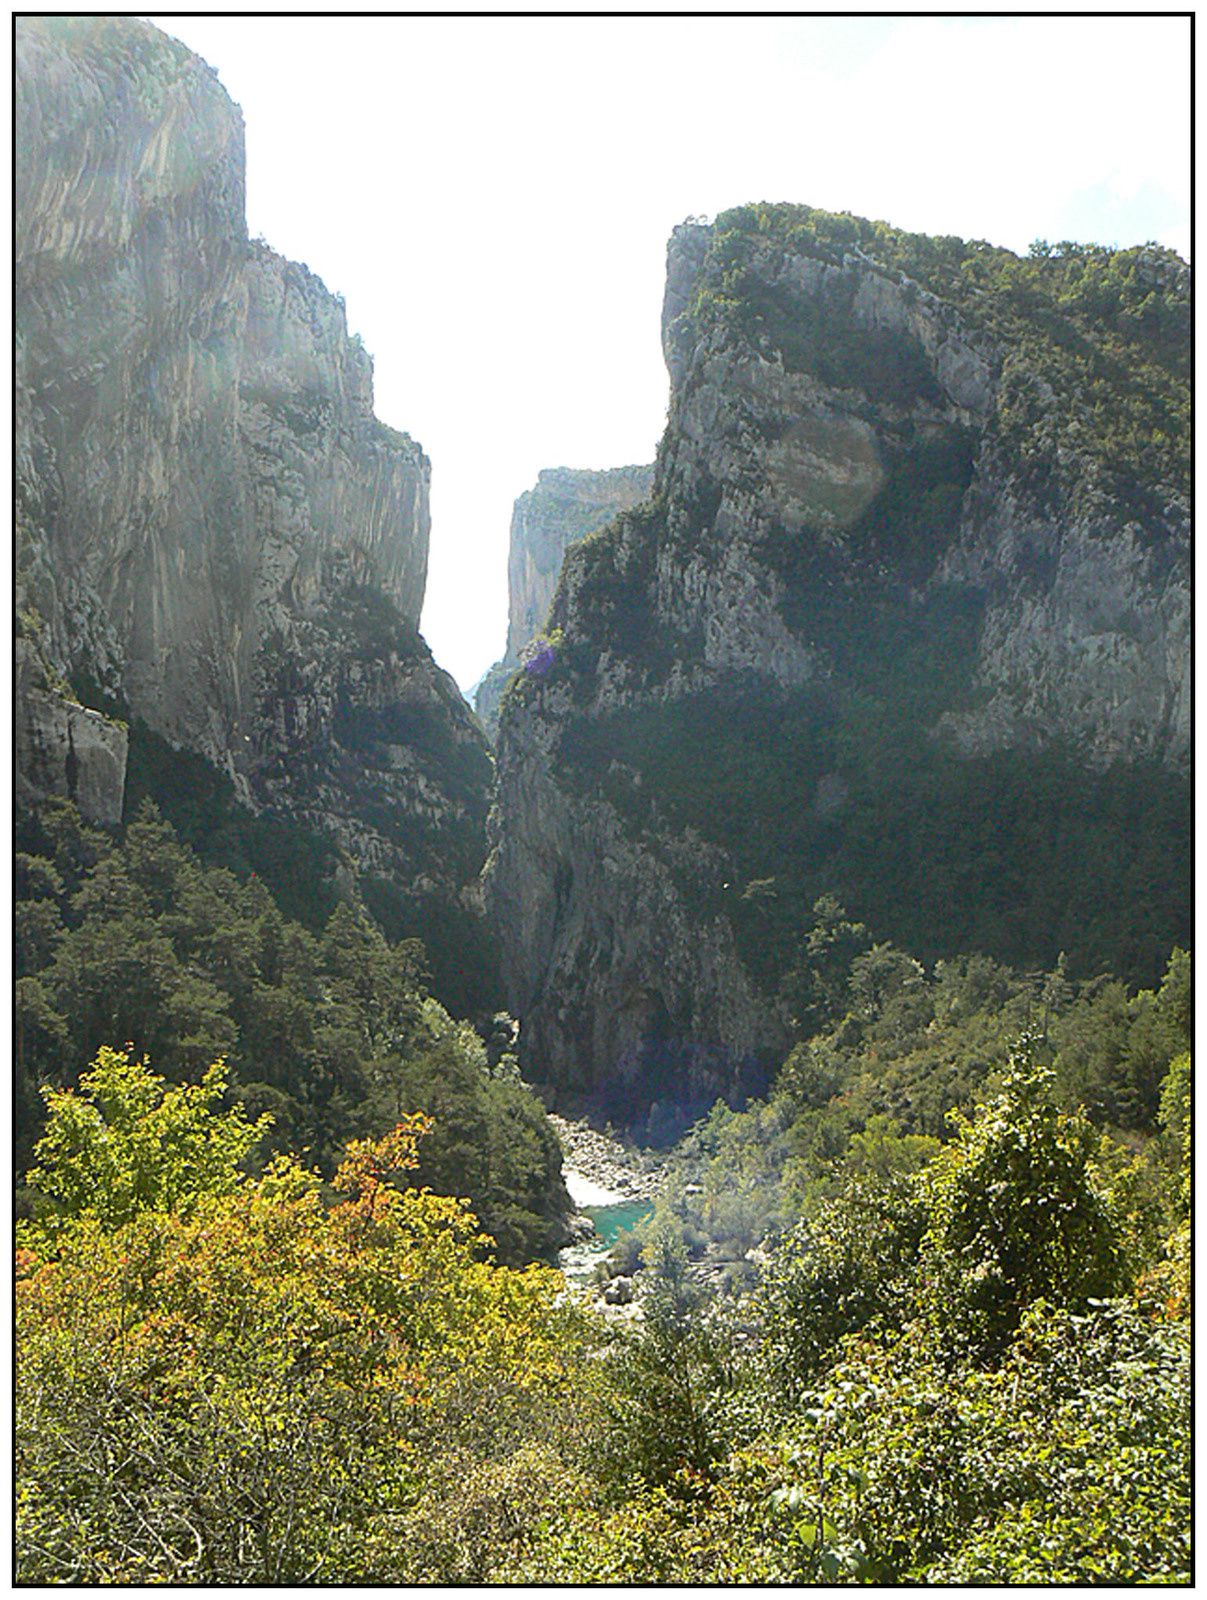 Les Gorges du Verdon : Belles images Ob_a33d5c_p1250623